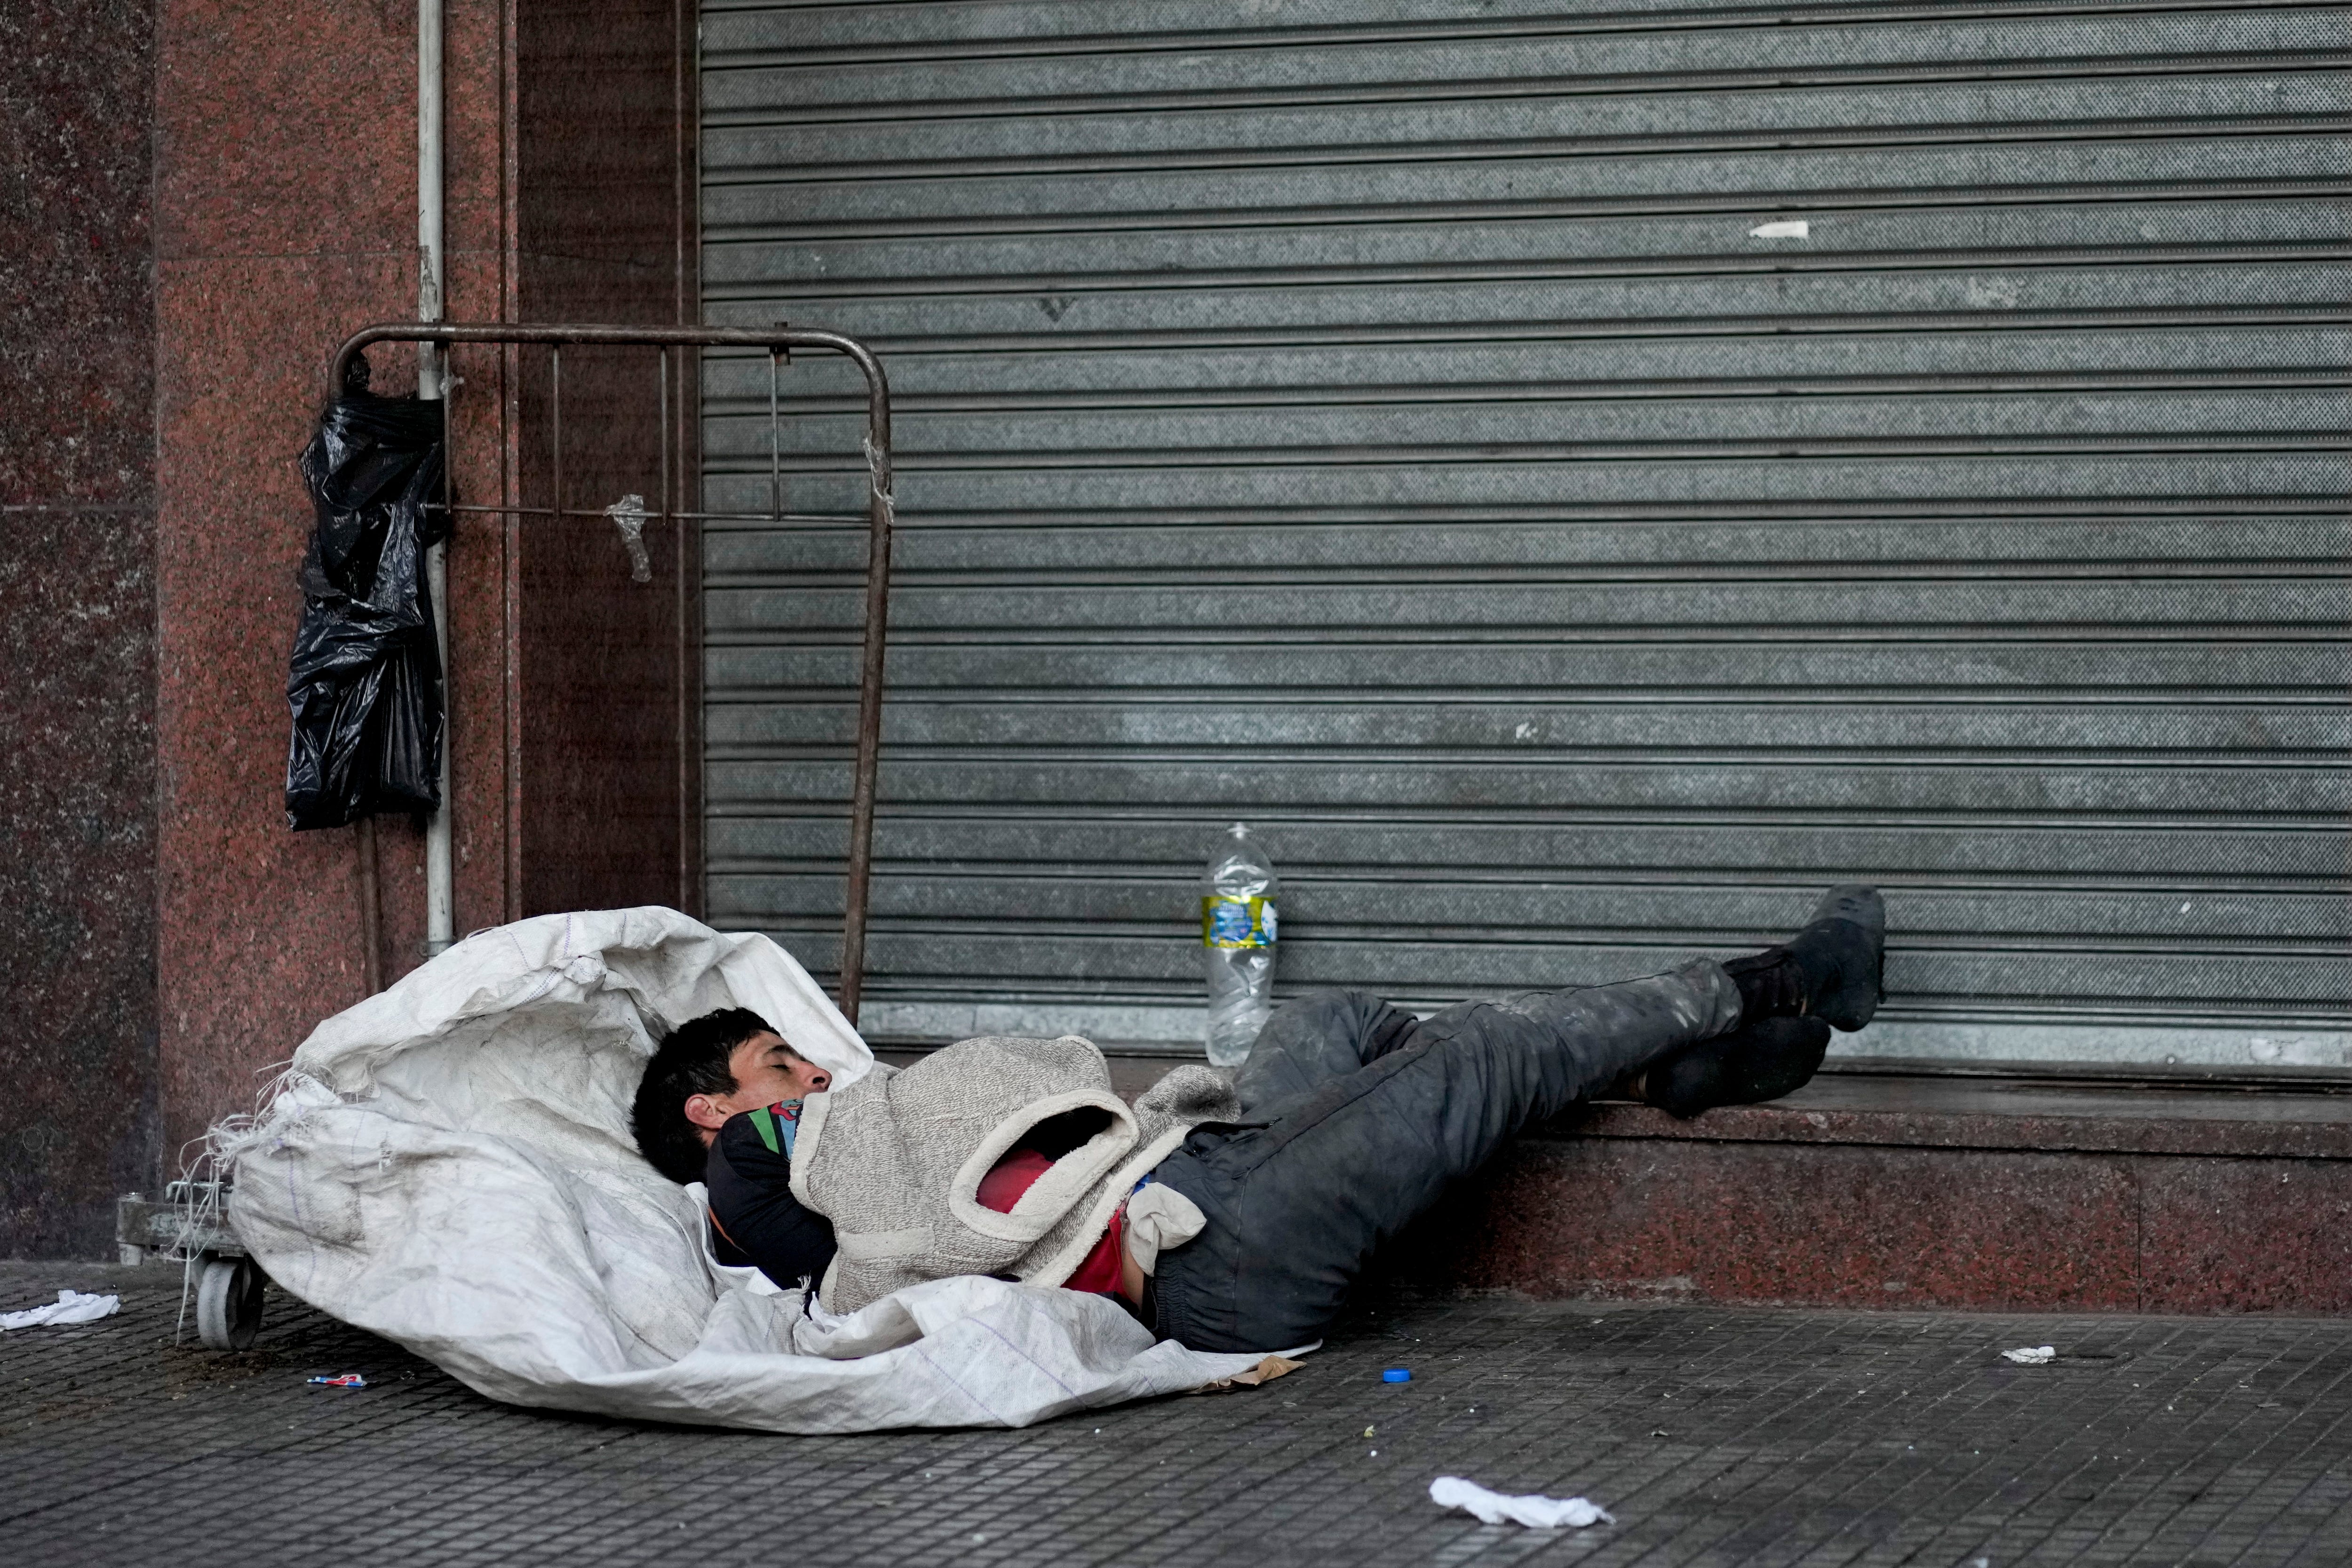 Un reciclador, que recolecta materiales para revender, durmiendo en una calle de Buenos Aires (AP foto/Natacha Pisarenko)